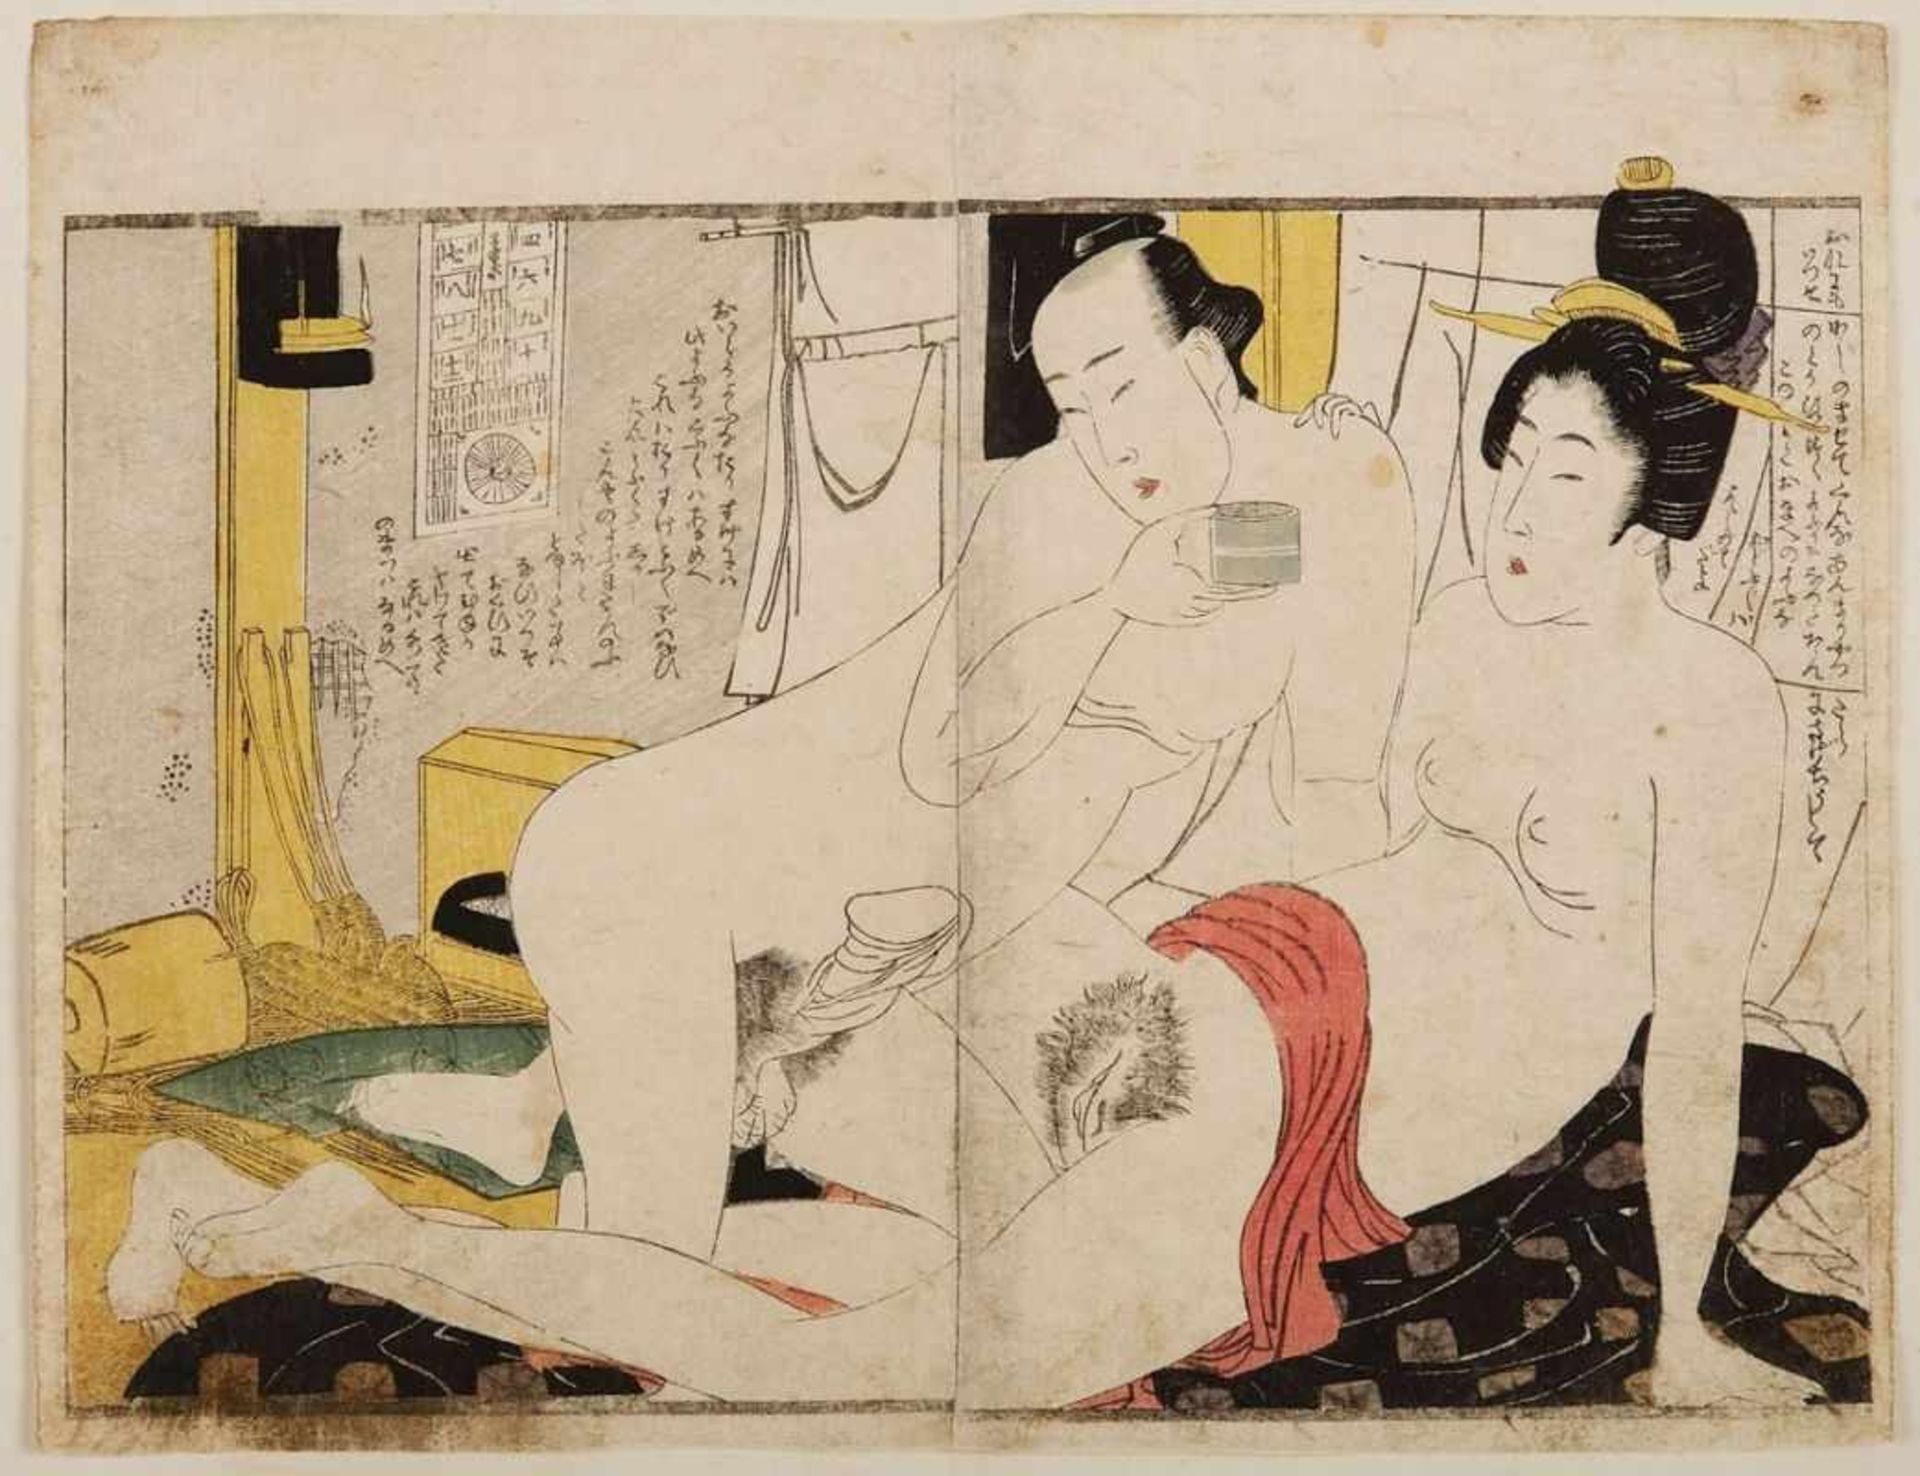 2 Farbholzschnitte Utamaro Kitawaga1753 - 1806 "Shunga" 21 x 26,4 und 21,5 x 31,8 cm, o. R. - Image 2 of 3